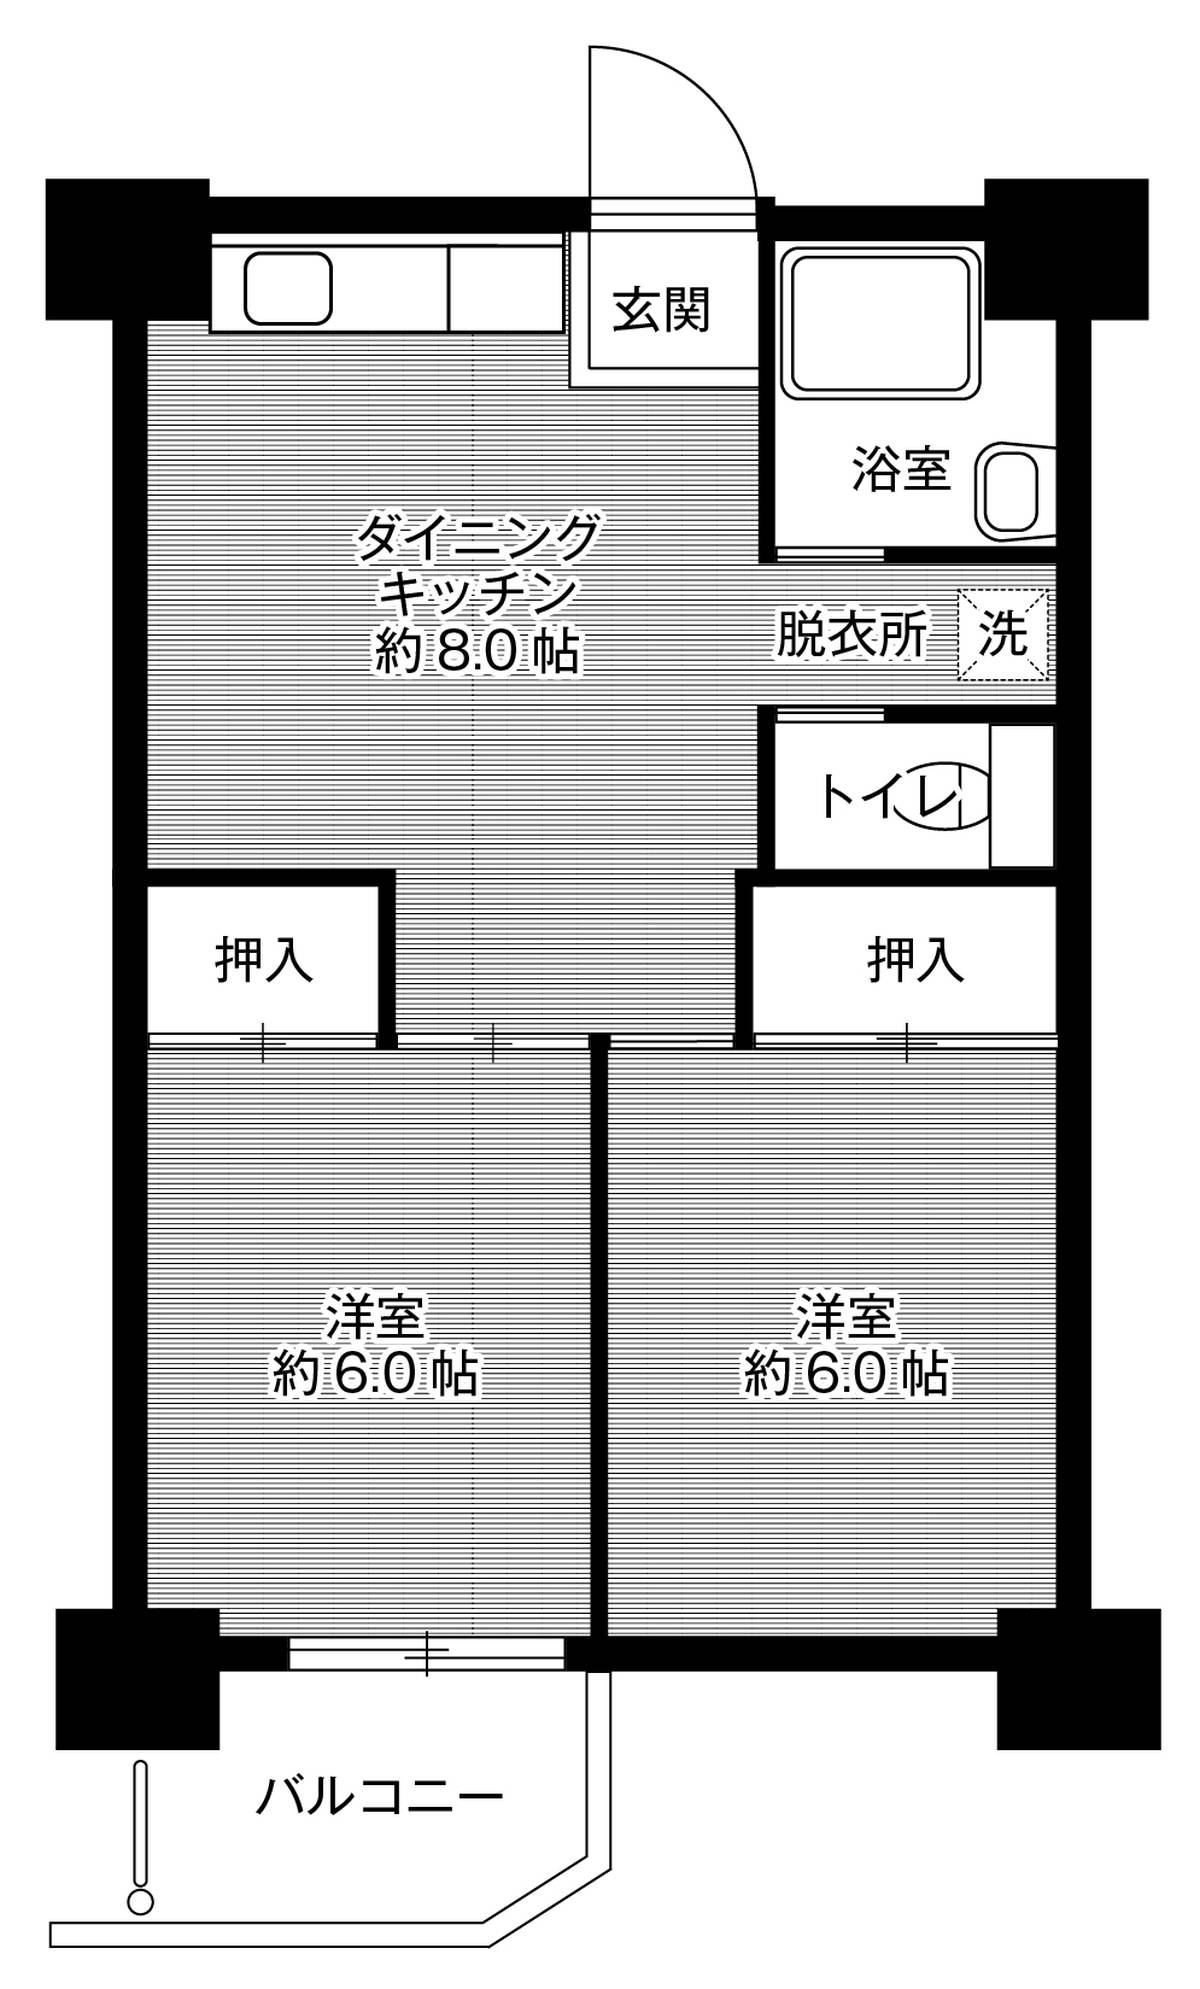 Sơ đồ phòng 2DK của Village House Senbokutoga Tower ở Minami-ku